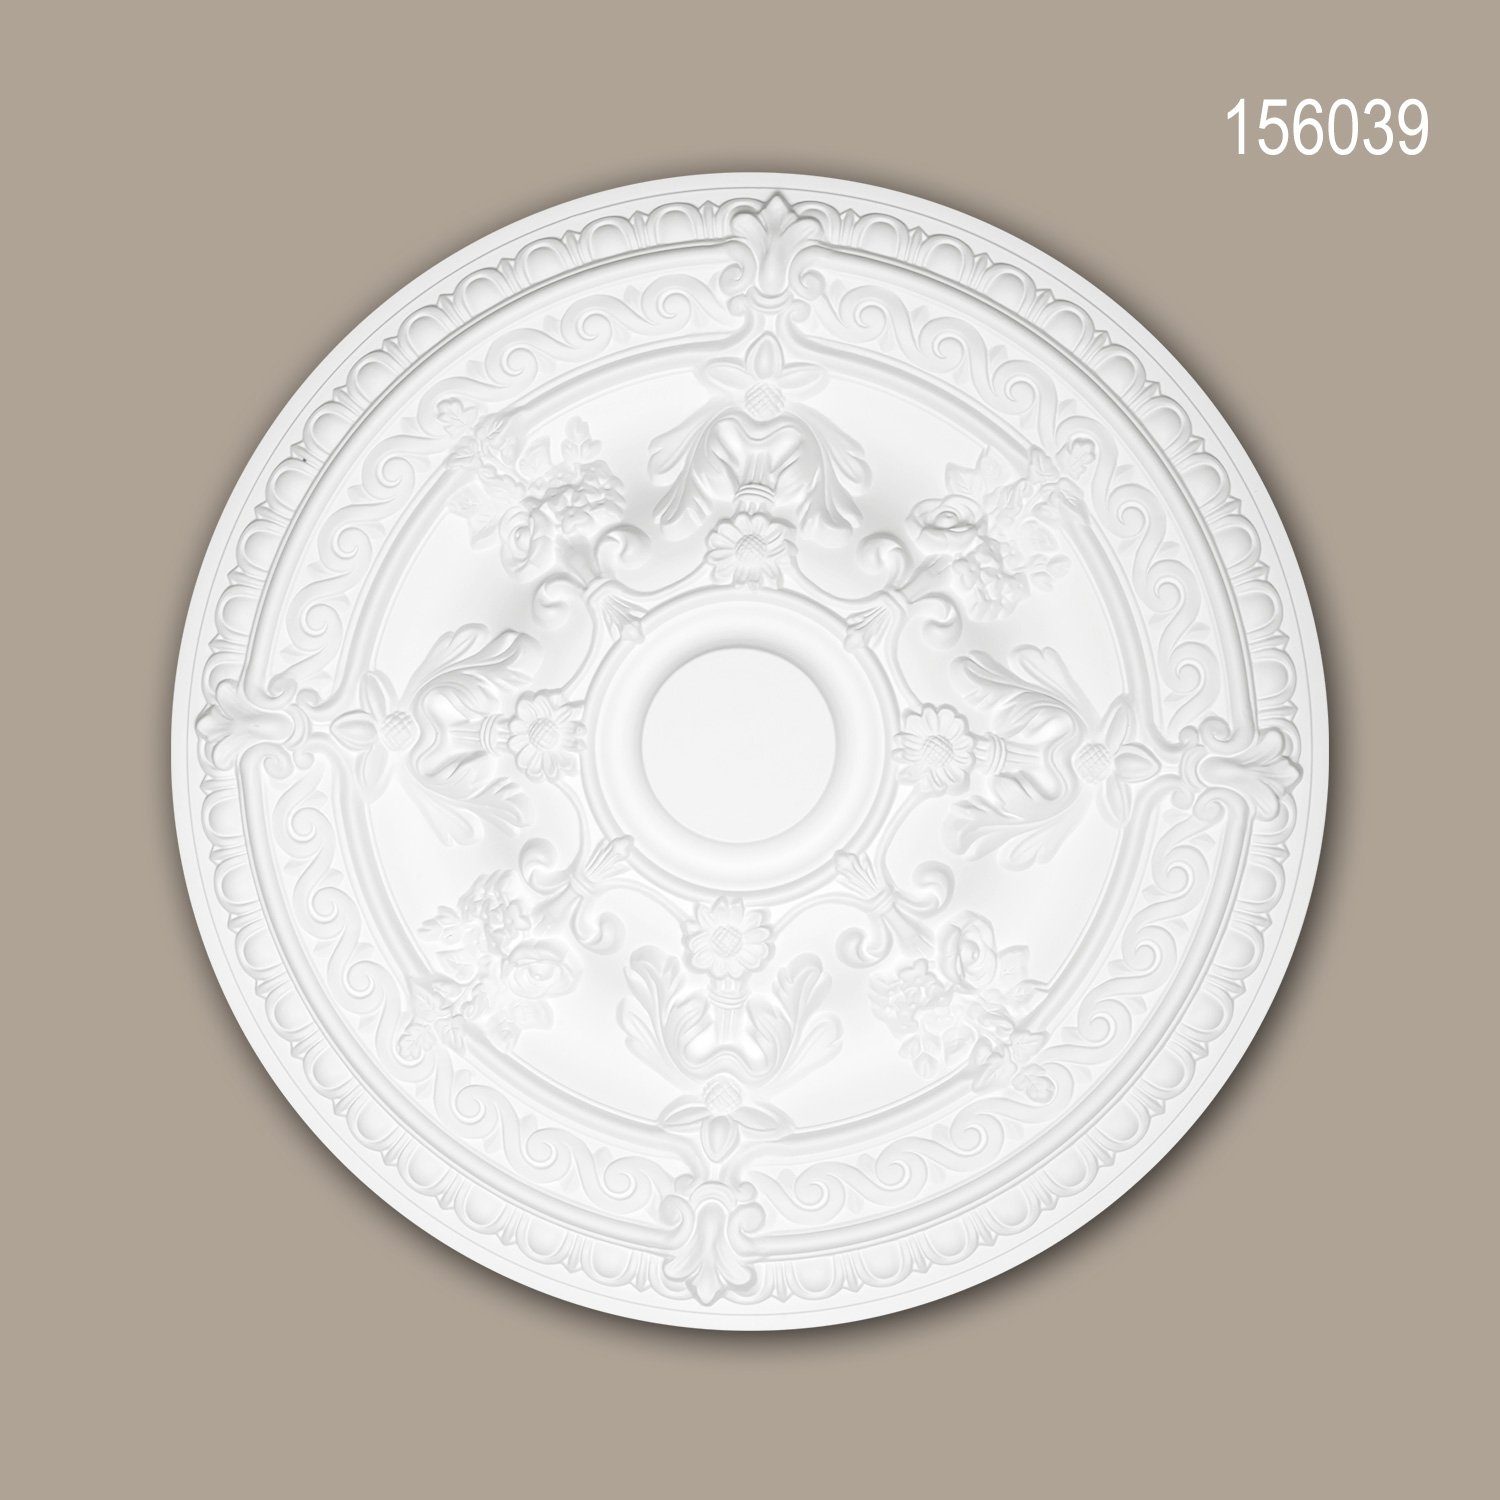 Profhome Decken-Rosette 156039 (Rosette, 1 St., Deckenrosette, Medallion, Stuckrosette, Deckenelement, Zierelement, Durchmesser 65,9 cm), weiß, vorgrundiert, Stil: Rokoko / Barock